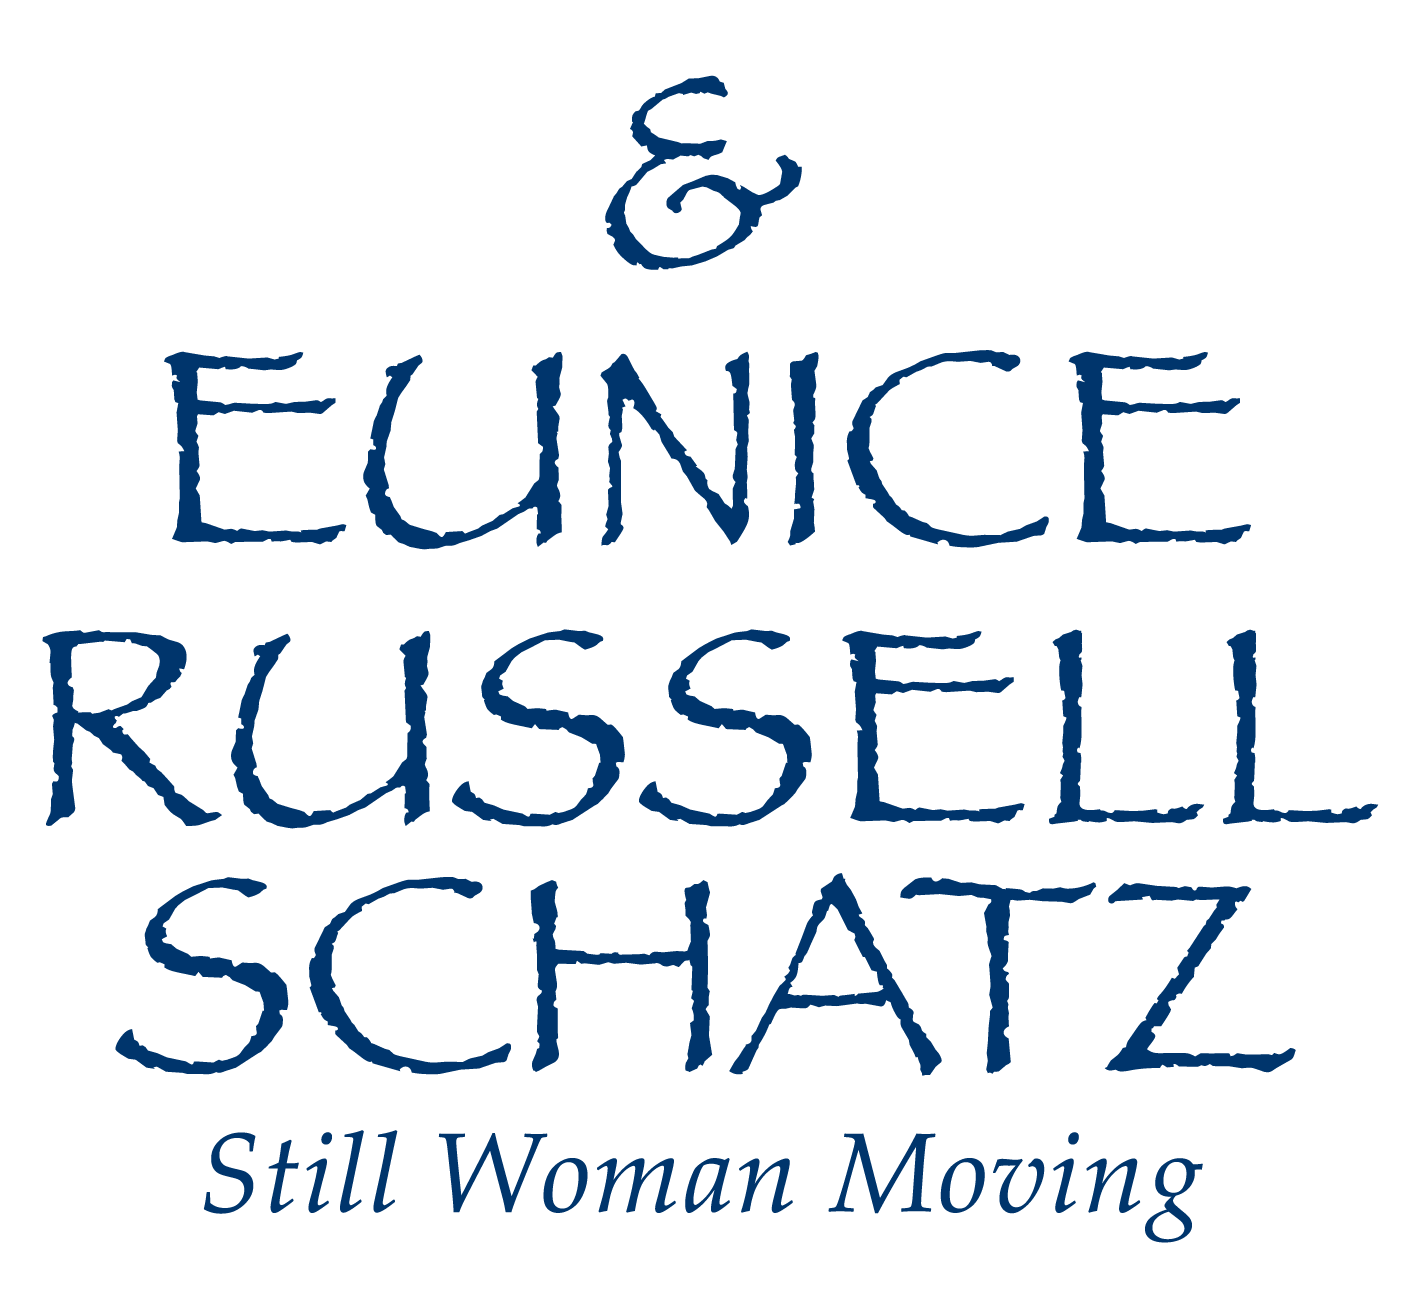 Eunice Russell Schatz - Still Woman Moving